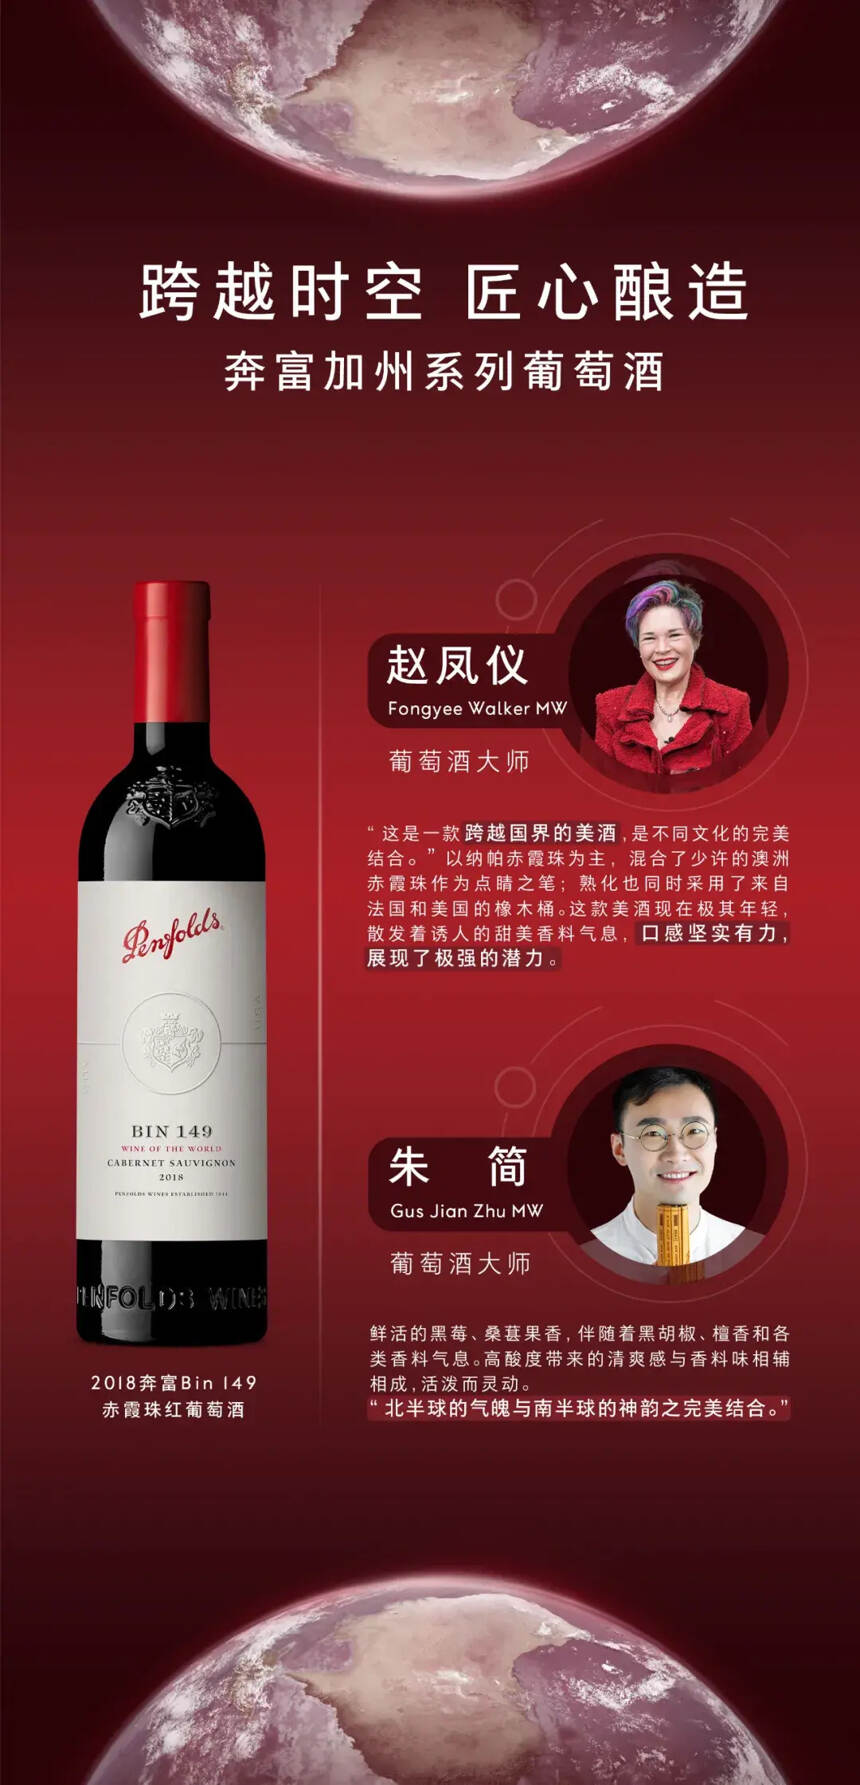 中国葡萄酒大师亲测即将中国上市的Penfolds奔富加州系列